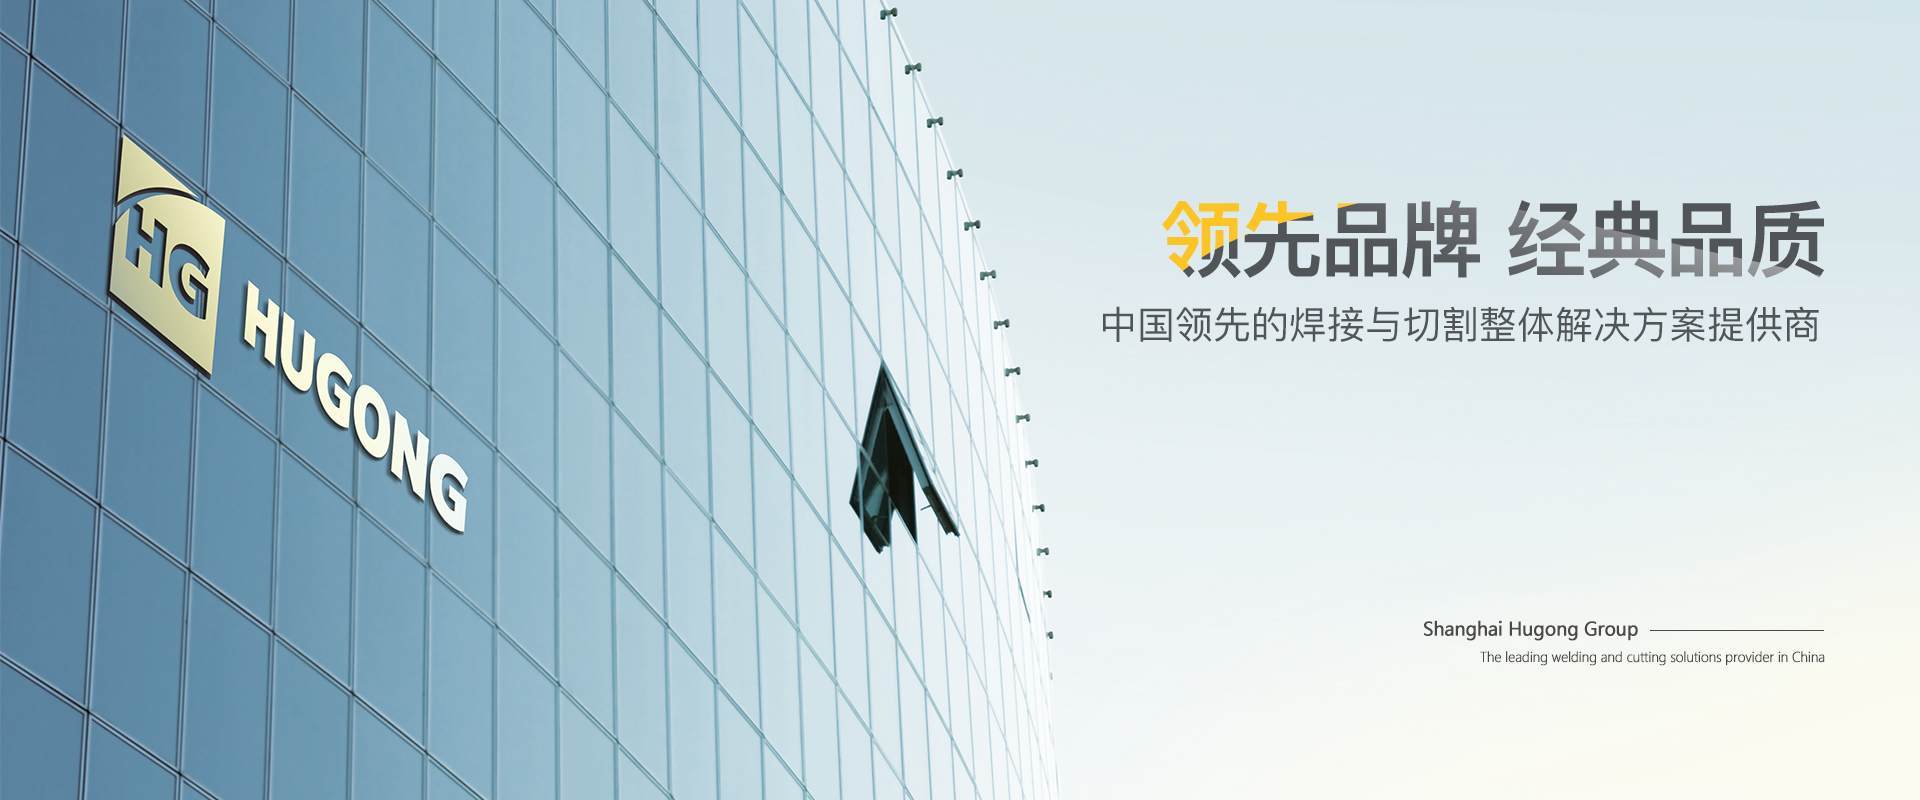 上海利来国际最老品牌网-中国领先的焊接与切割整体解决方案提供商